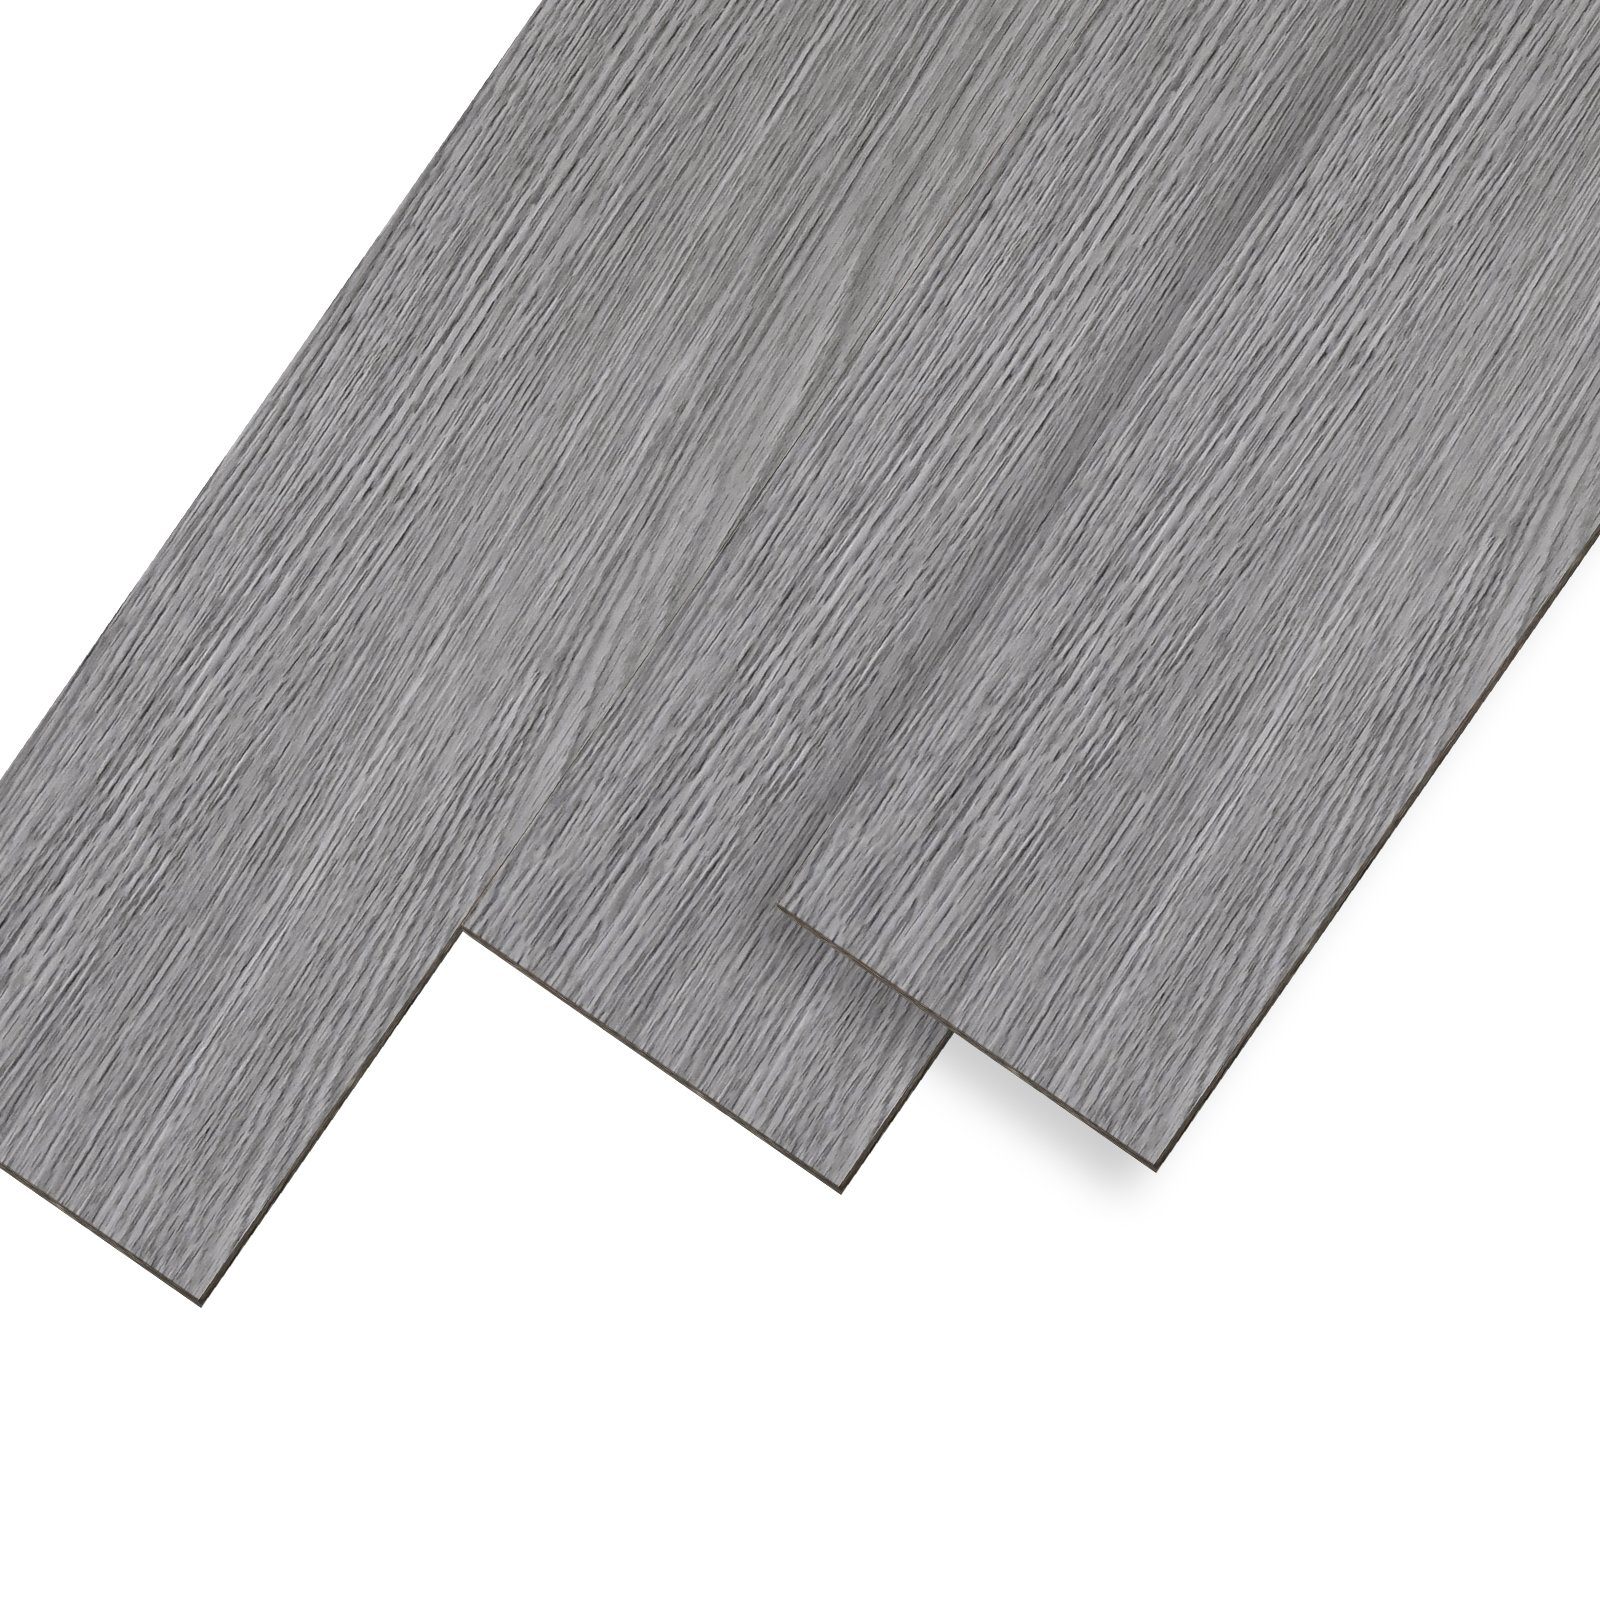 UISEBRT Vinylboden PVC Bodenbelag Selbstklebend Holz-Optik Dekor-Dielen Grau